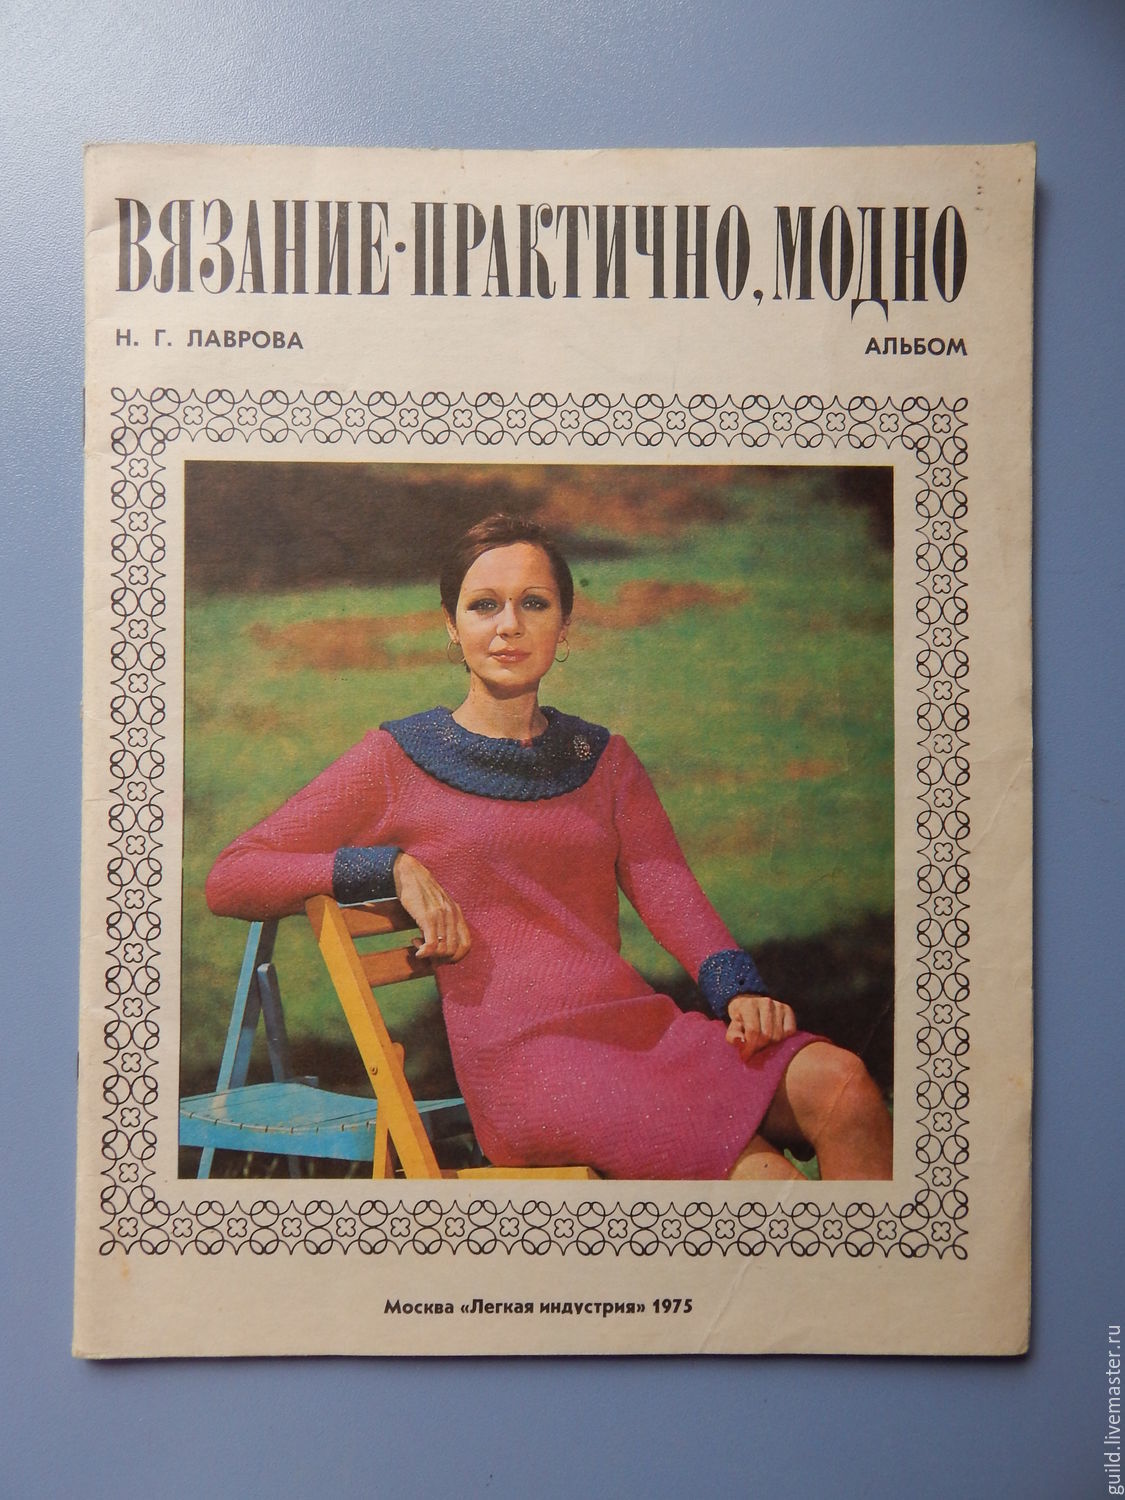 Сайты журналов вязания. Вязание практично модно Лаврова 1975 альбом. Вязание советские журналы. Советские журналы мод по вязанию.